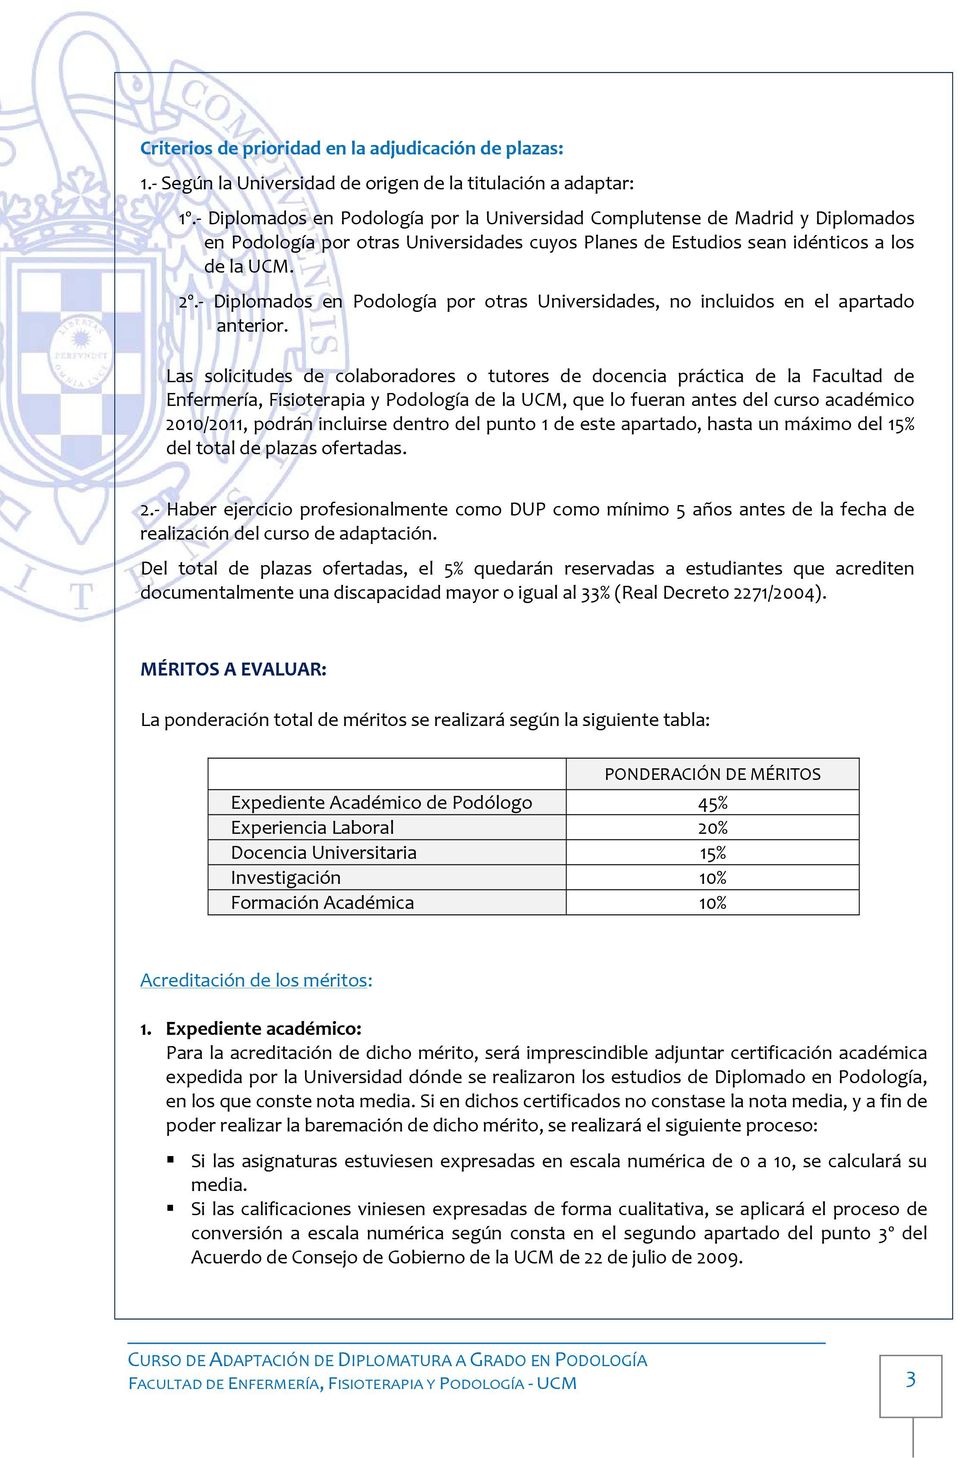 Diplomados en Podología por otras Universidades, no incluidos en el apartado anterior.